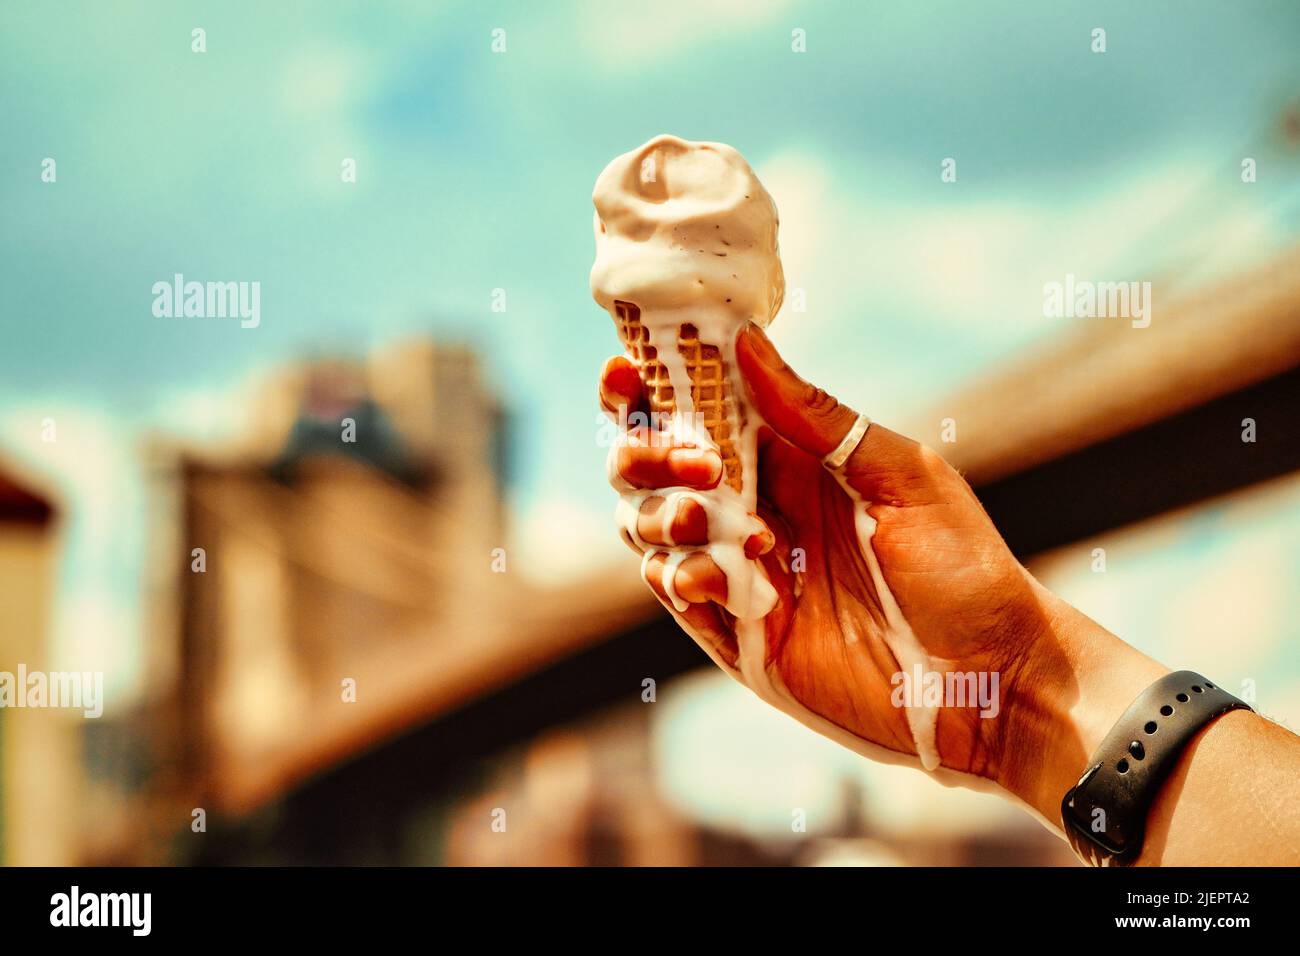 Schmelzender Vanilleeis-Kegel auf der Hand gegen blauen Himmel und Brooklyn Bridge im Hintergrund Stockfoto